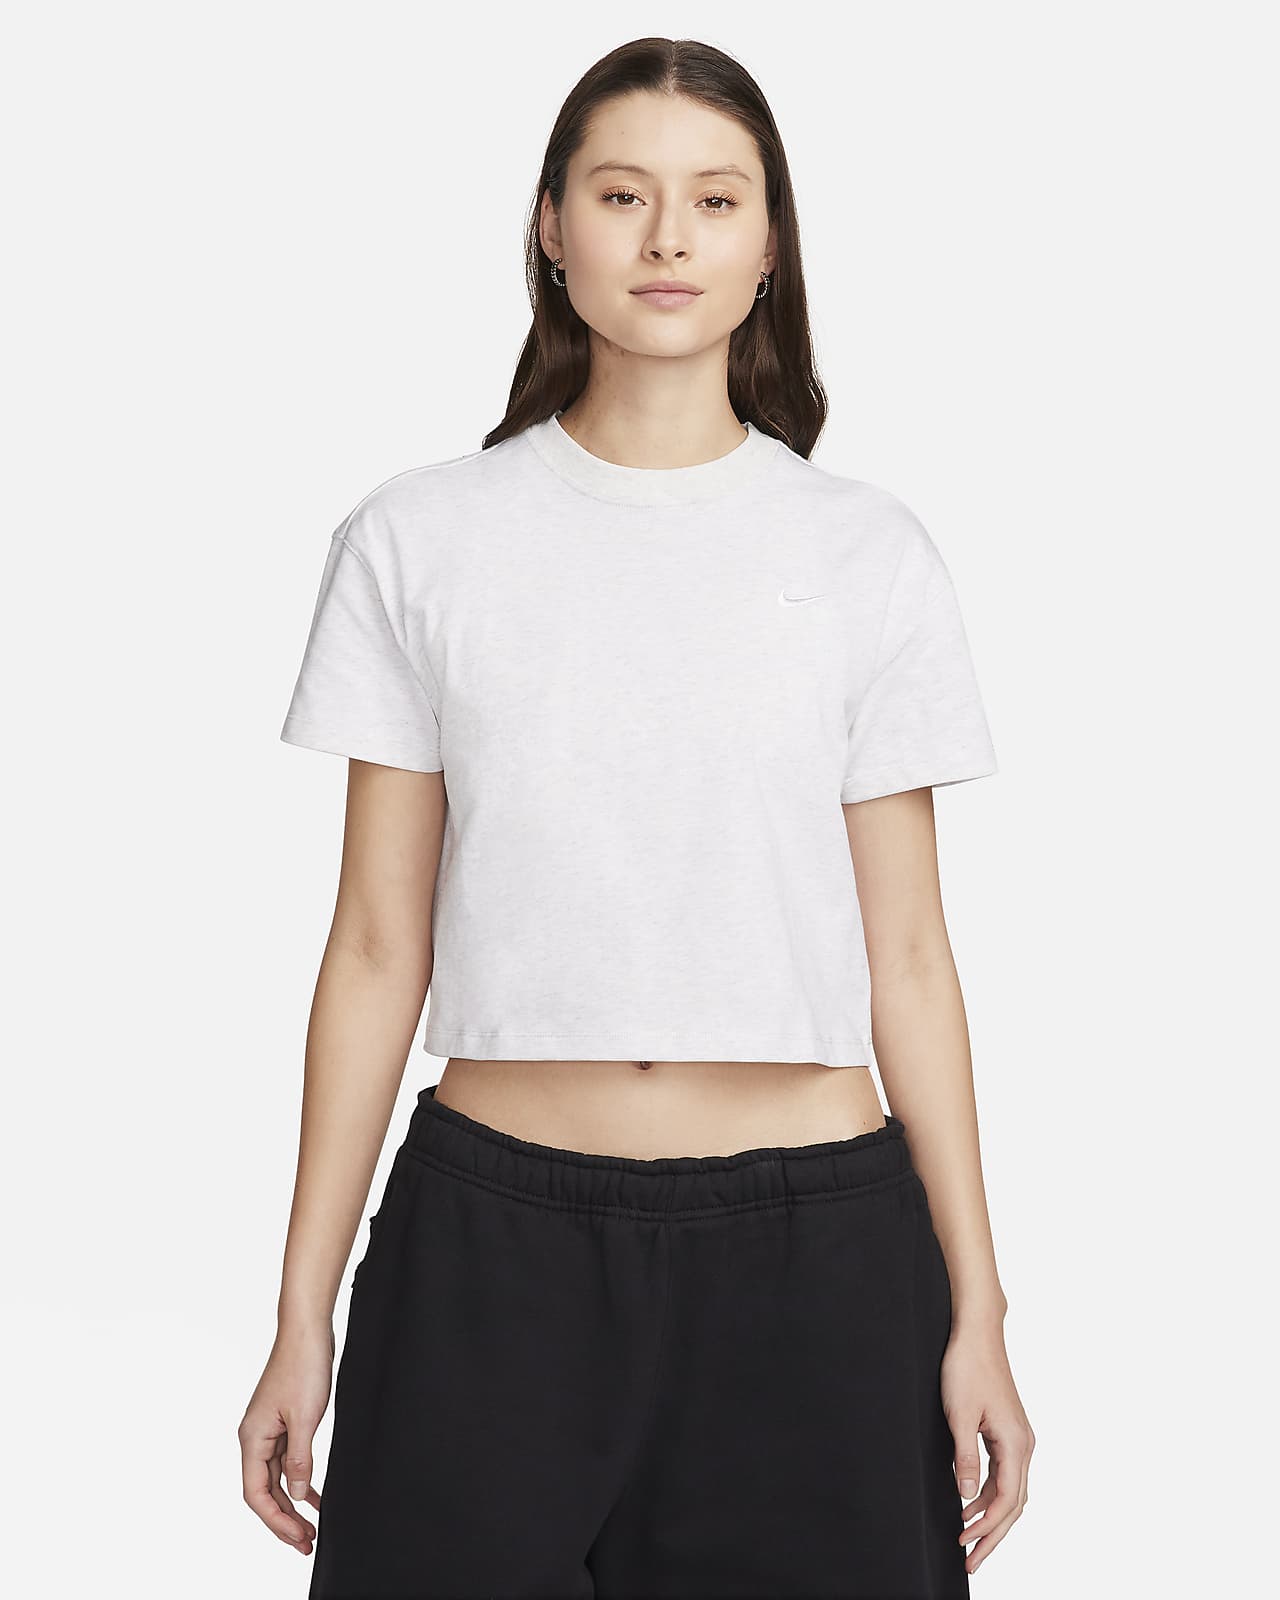 Nike Solo Swoosh Women's T-Shirt.